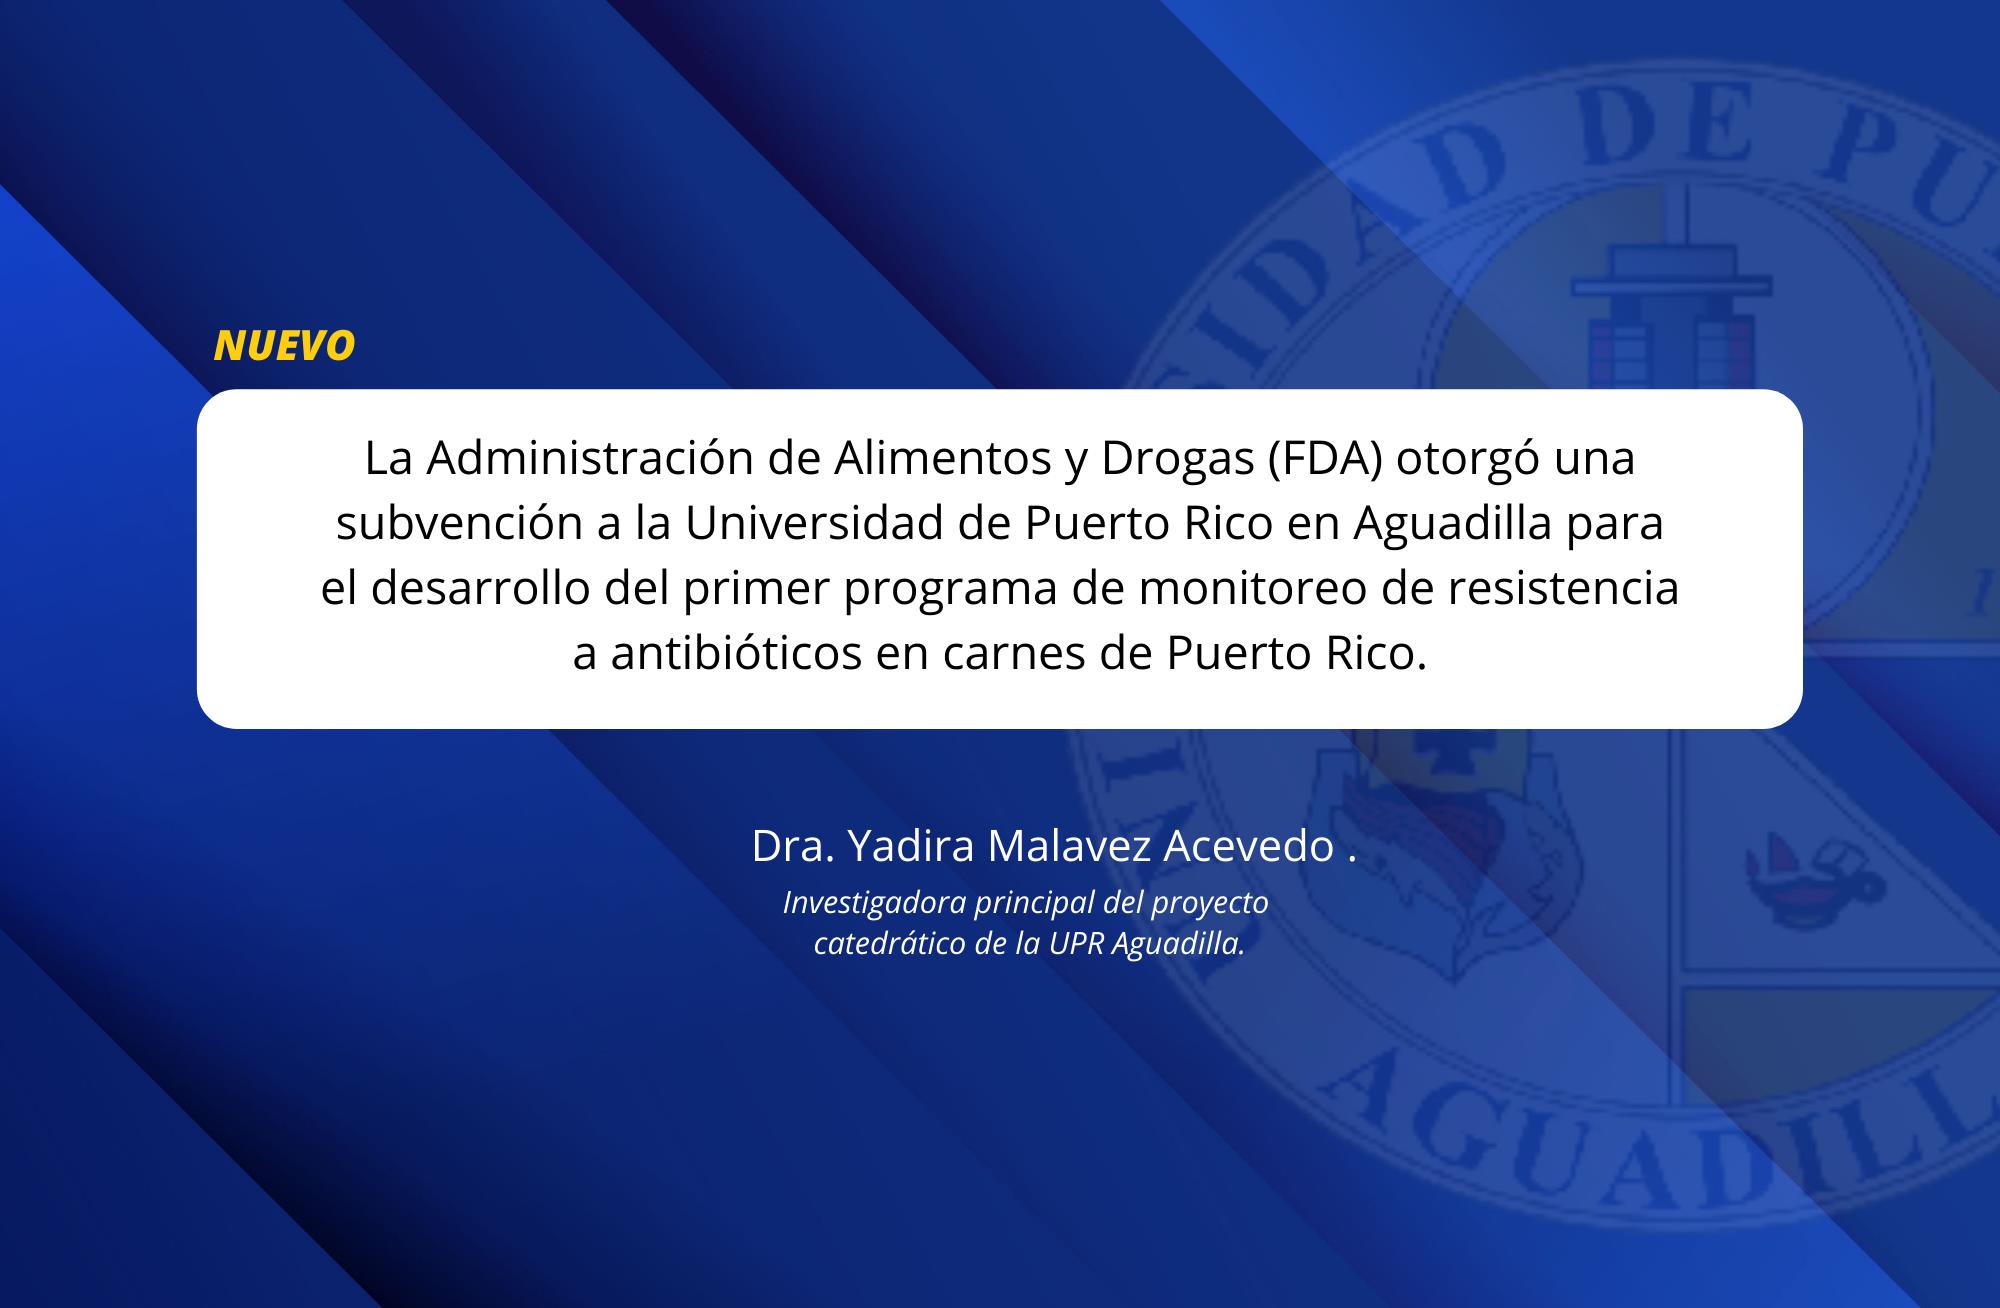 La Administración de Alimentos y Drogas (FDA) otorgó una subvención a la Universidad de Puerto Rico en Aguadilla para el desarrollo del primer programa de monitoreo de resistencia a antibióticos en carnes de Puerto Rico